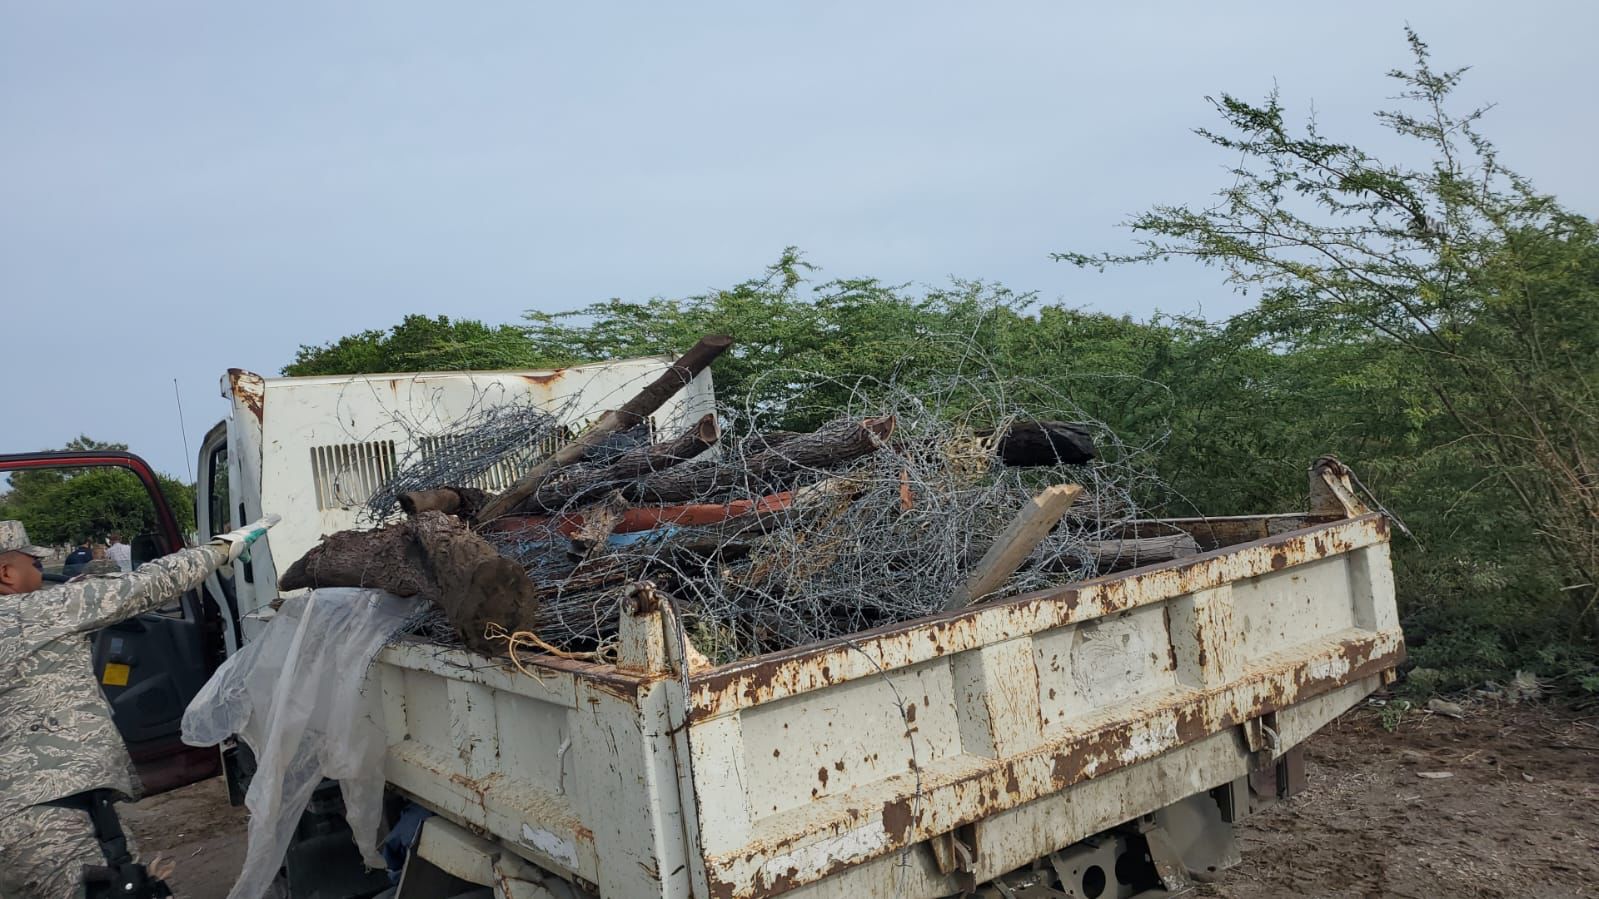 REPÚBLICA DOMINICANA: Ministerio de Medio Ambiente inicia proceso de derribo de alambradas ilegales dentro de Las Dunas de Baní